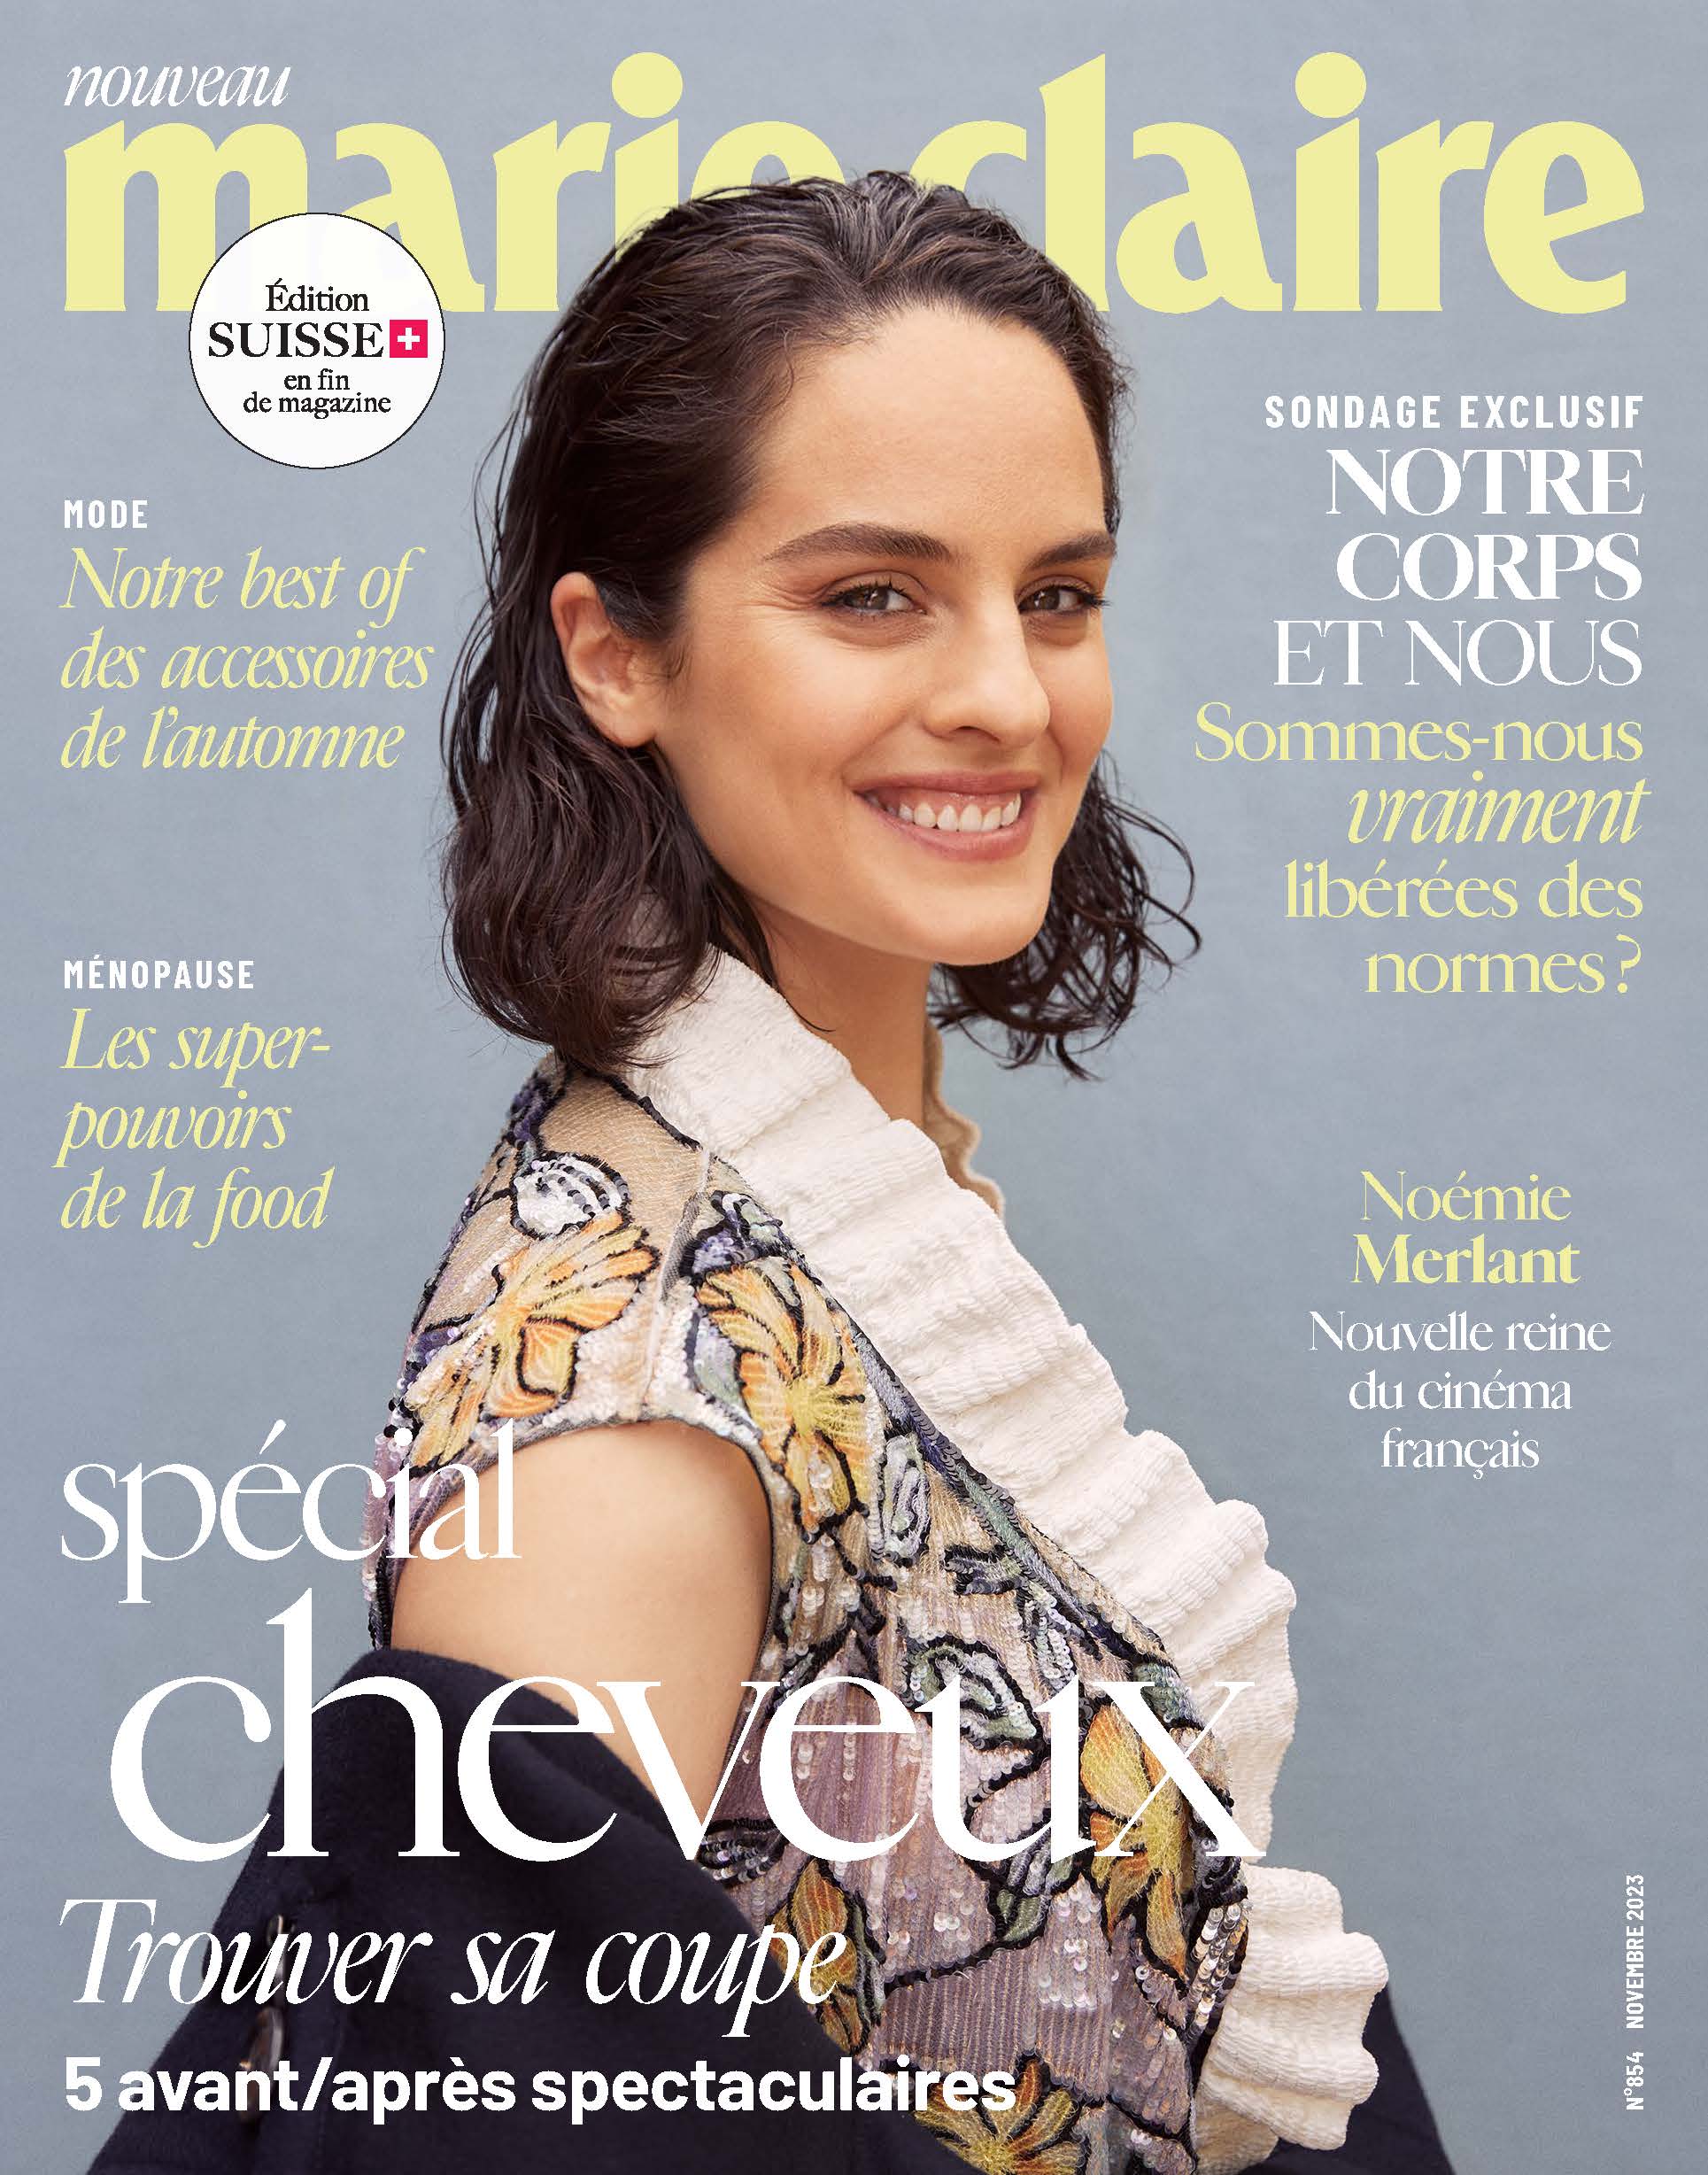 Marie Claire Suisse - Couverture - Octobre 23